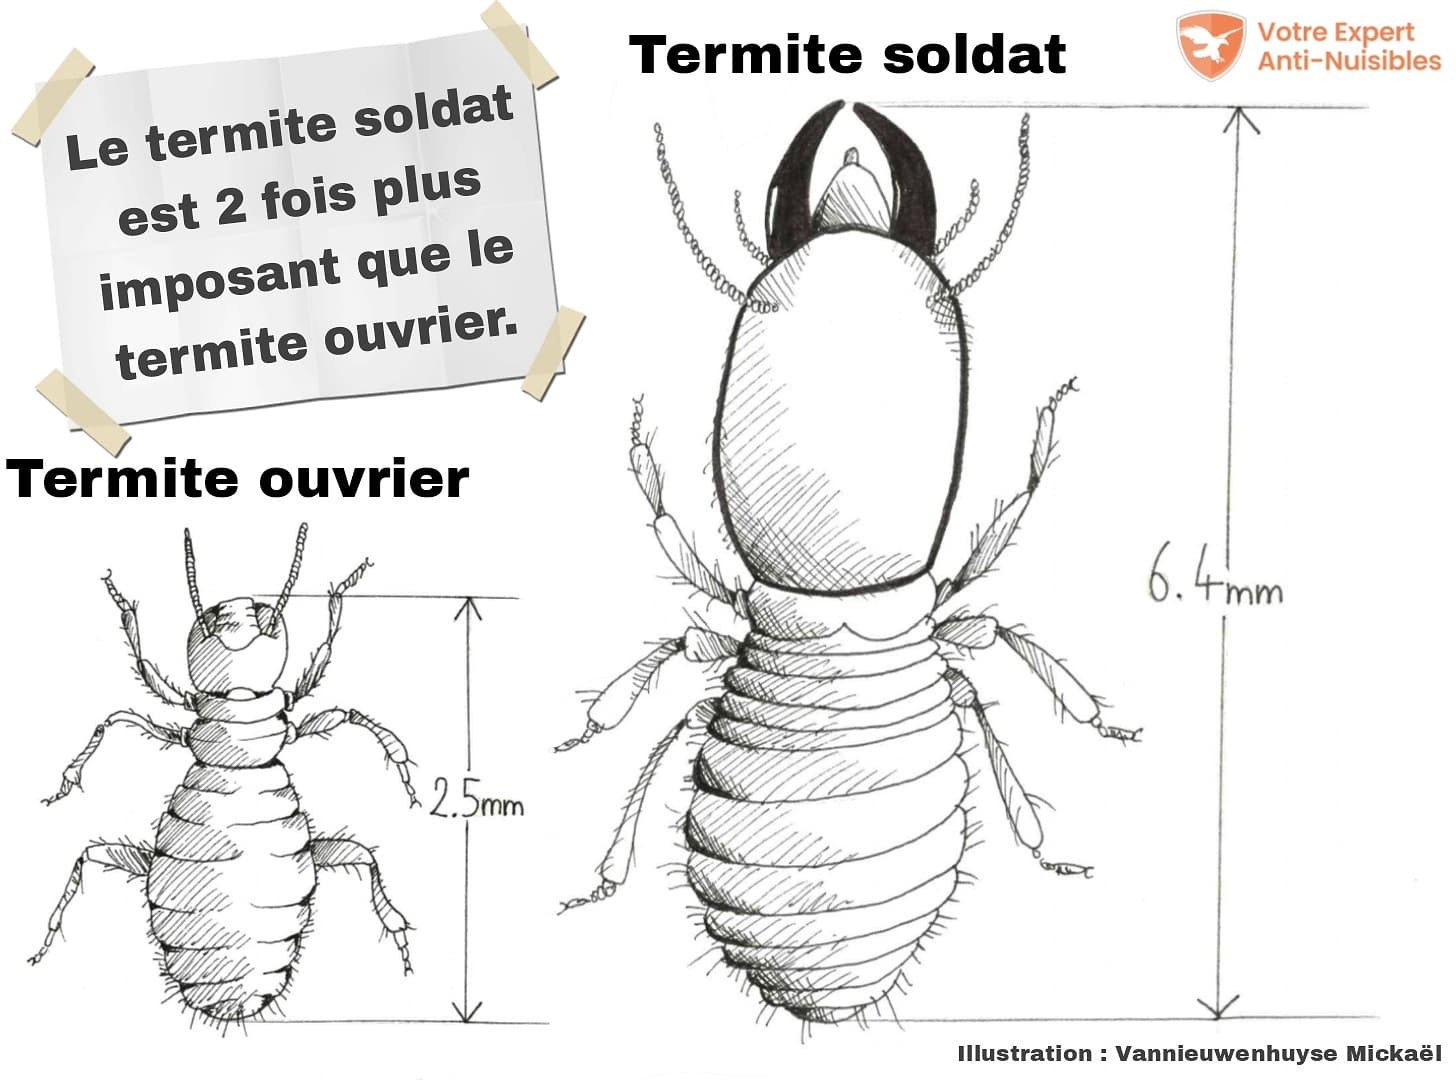 Différence de taille entre un termite ouvrier et un termite soldat